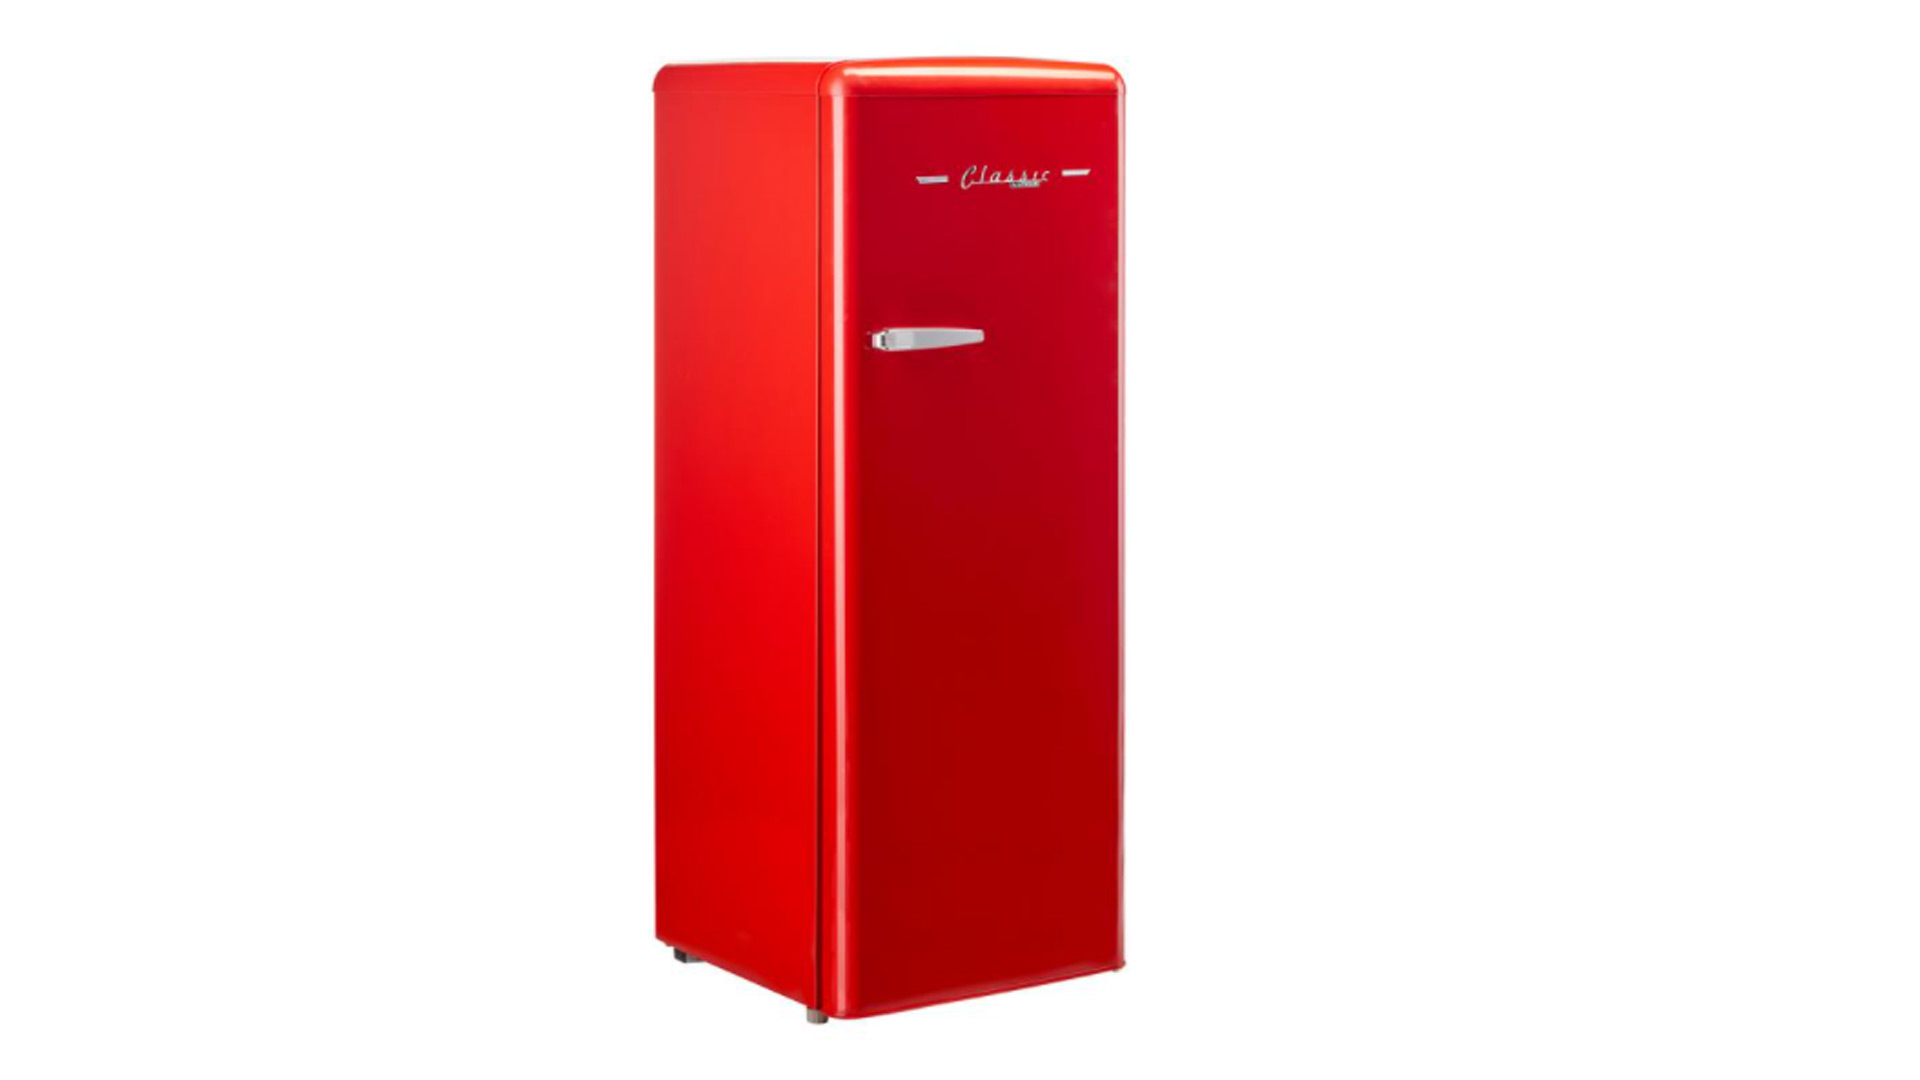 Best freezers: Unique UGP-175L R AC